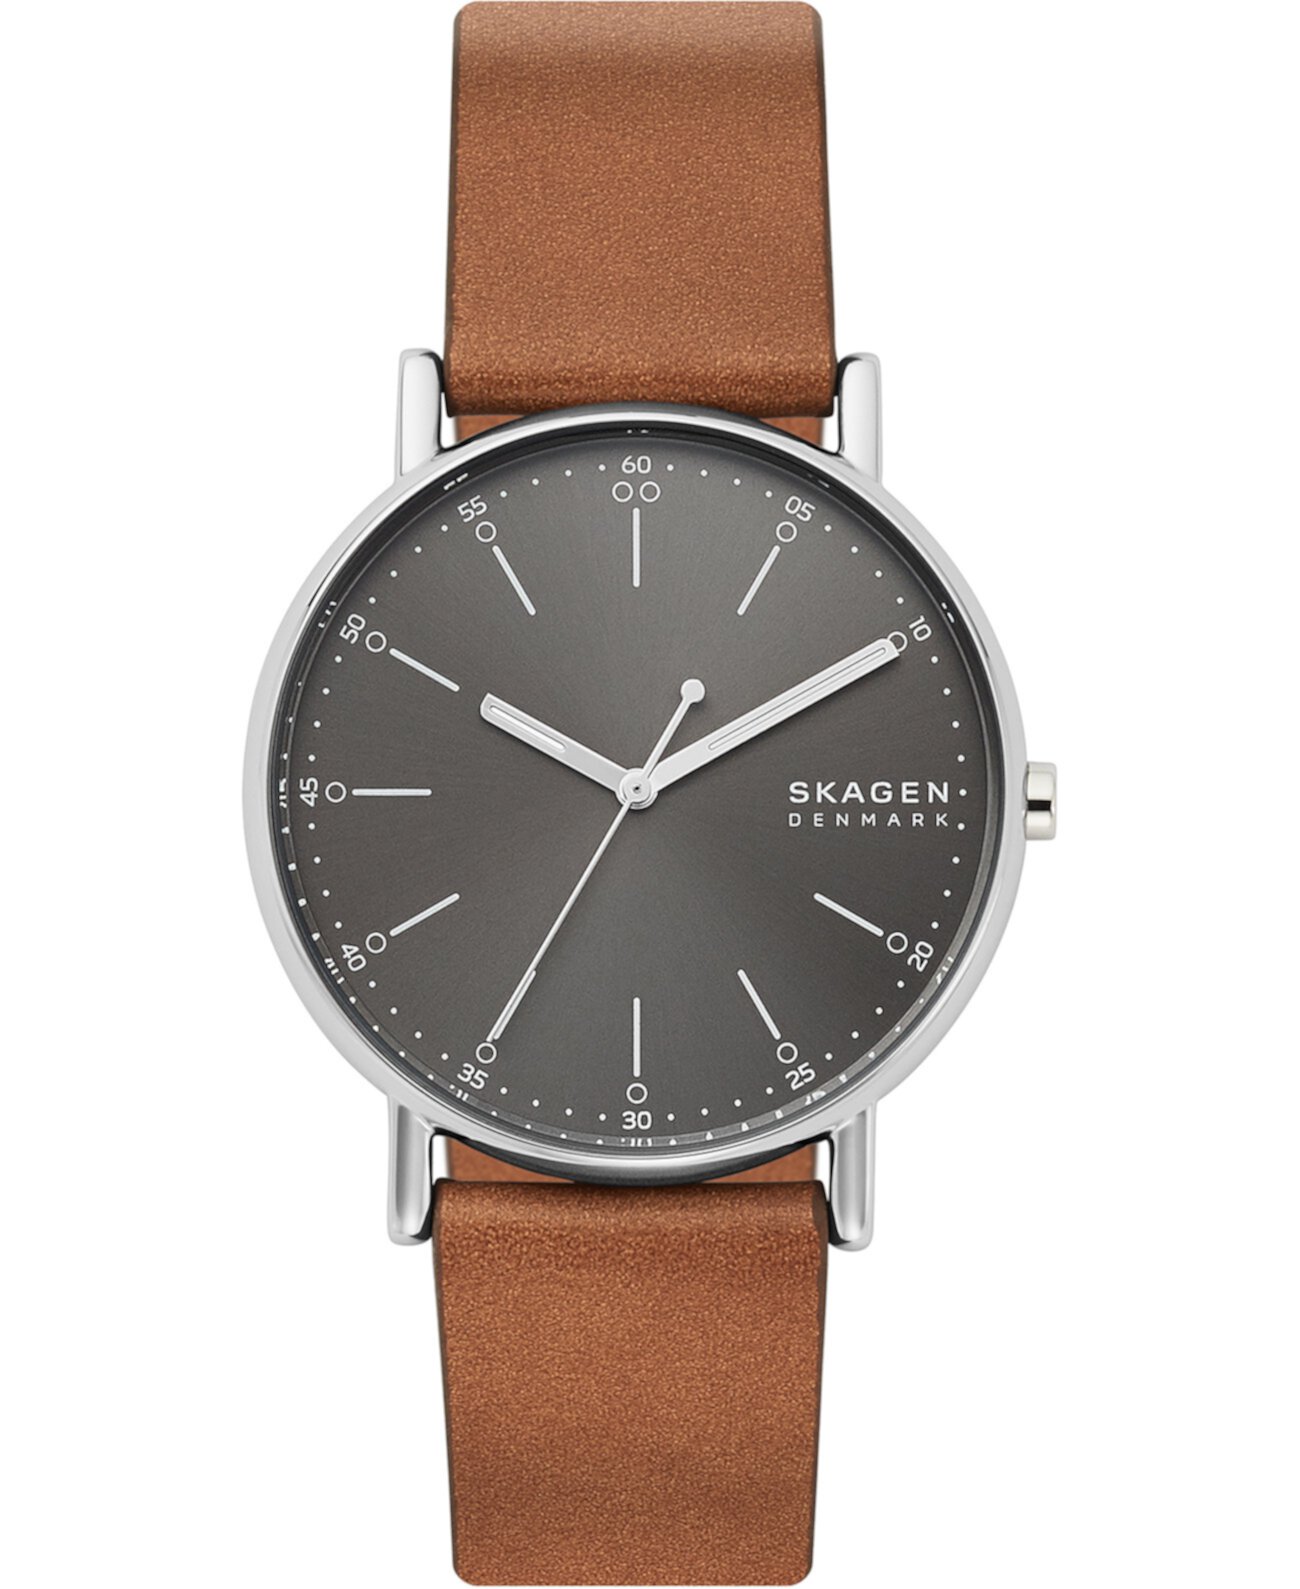 Мужские часы Signatur с коричневым кожаным ремешком 40мм Skagen